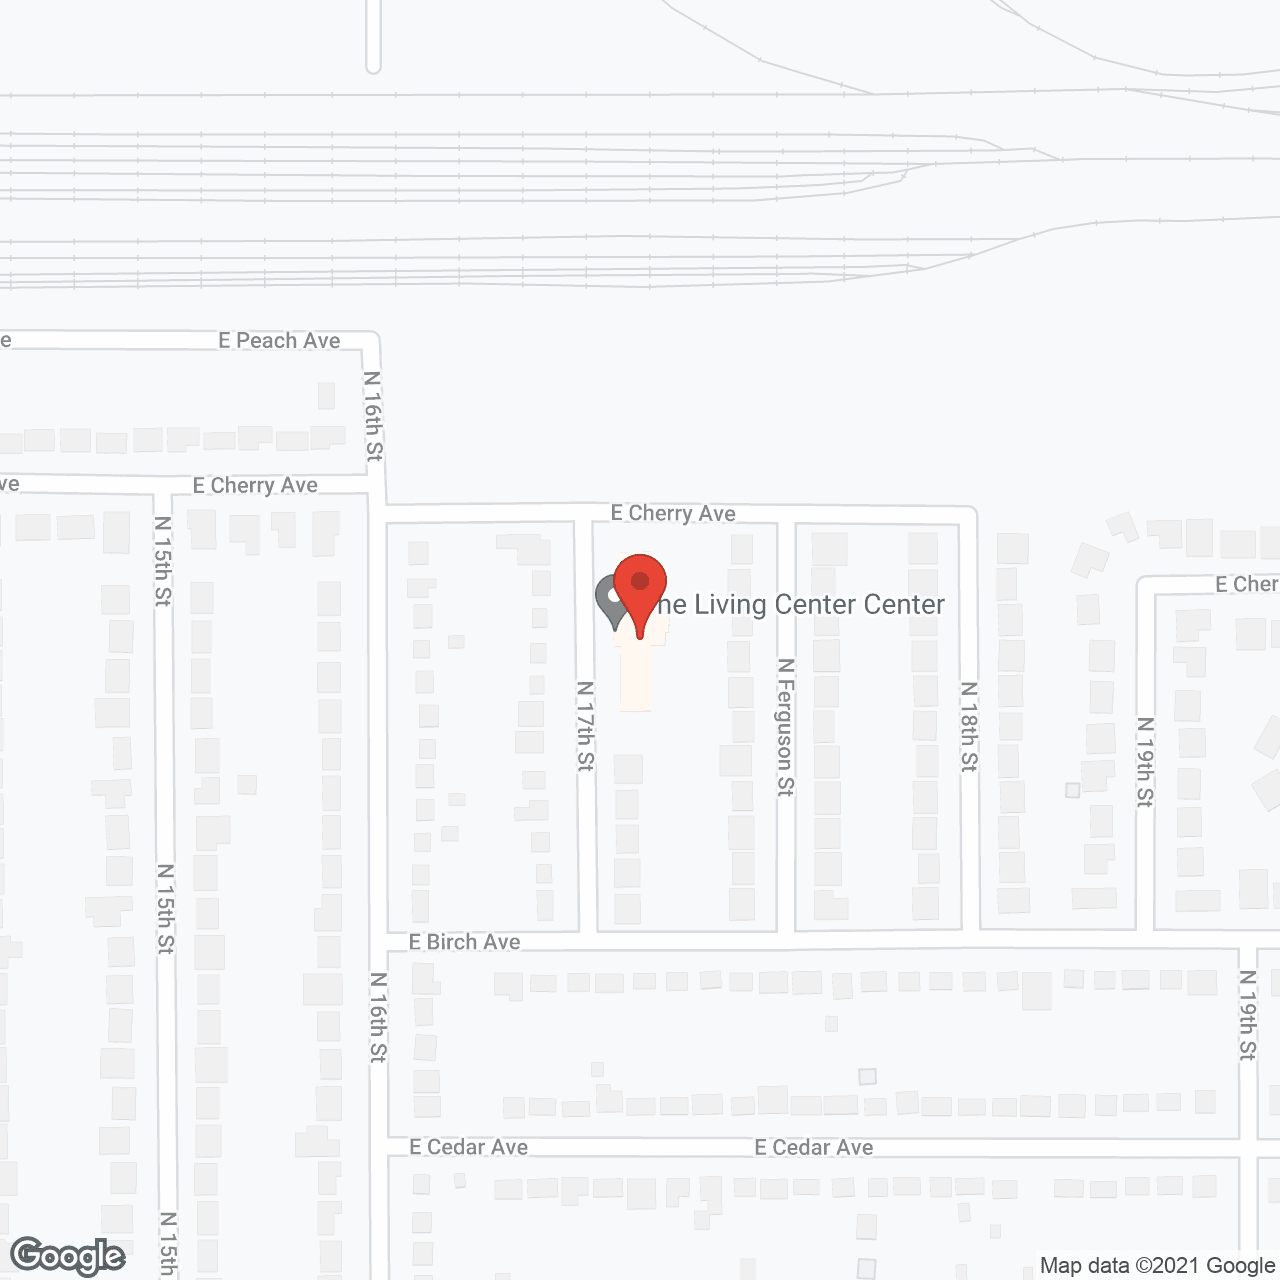 Living Center in google map